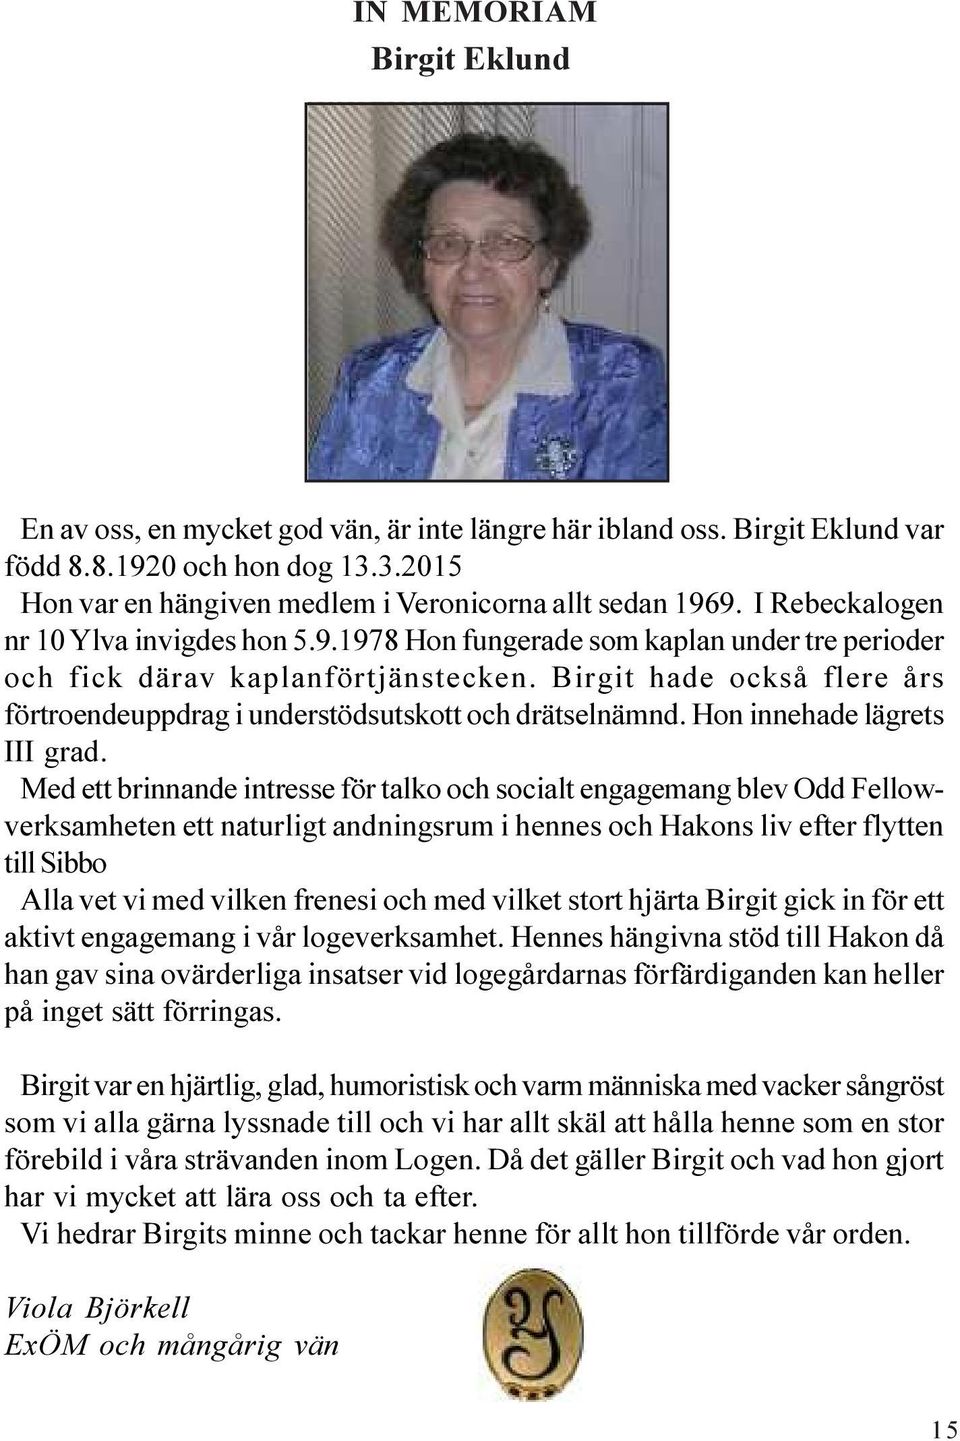 Birgit hade också flere års förtroendeuppdrag i understödsutskott och drätselnämnd. Hon innehade lägrets III grad.